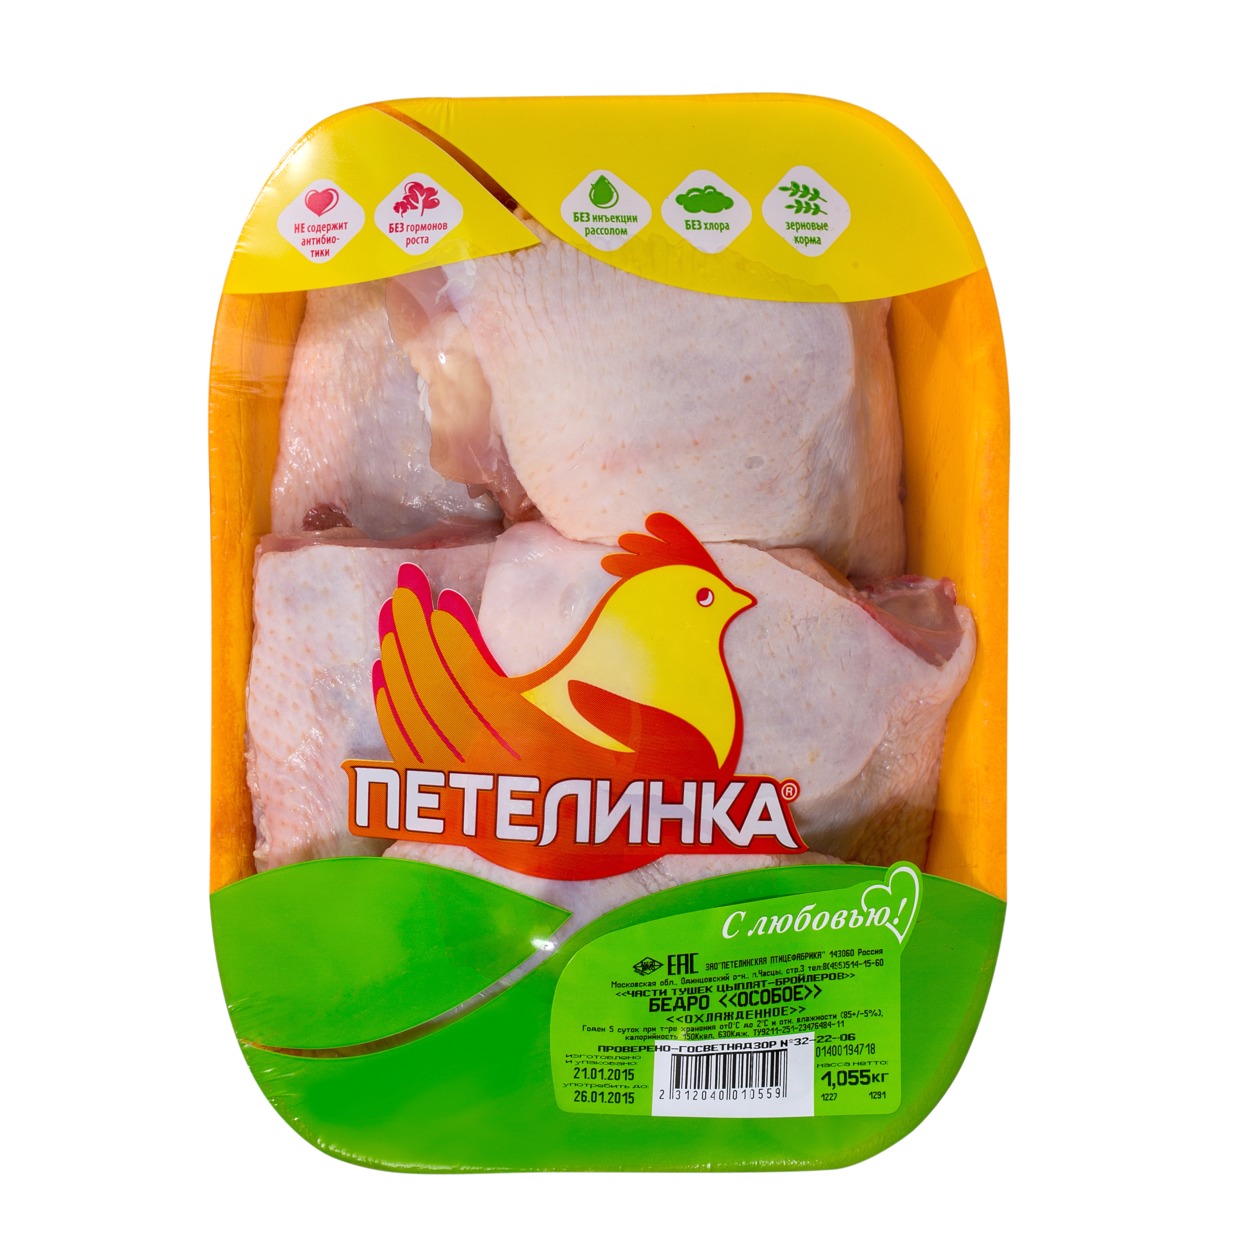 Бедро цыпленка, особое, охлажденное, Петелинка, 1 кг по акции в Пятерочке